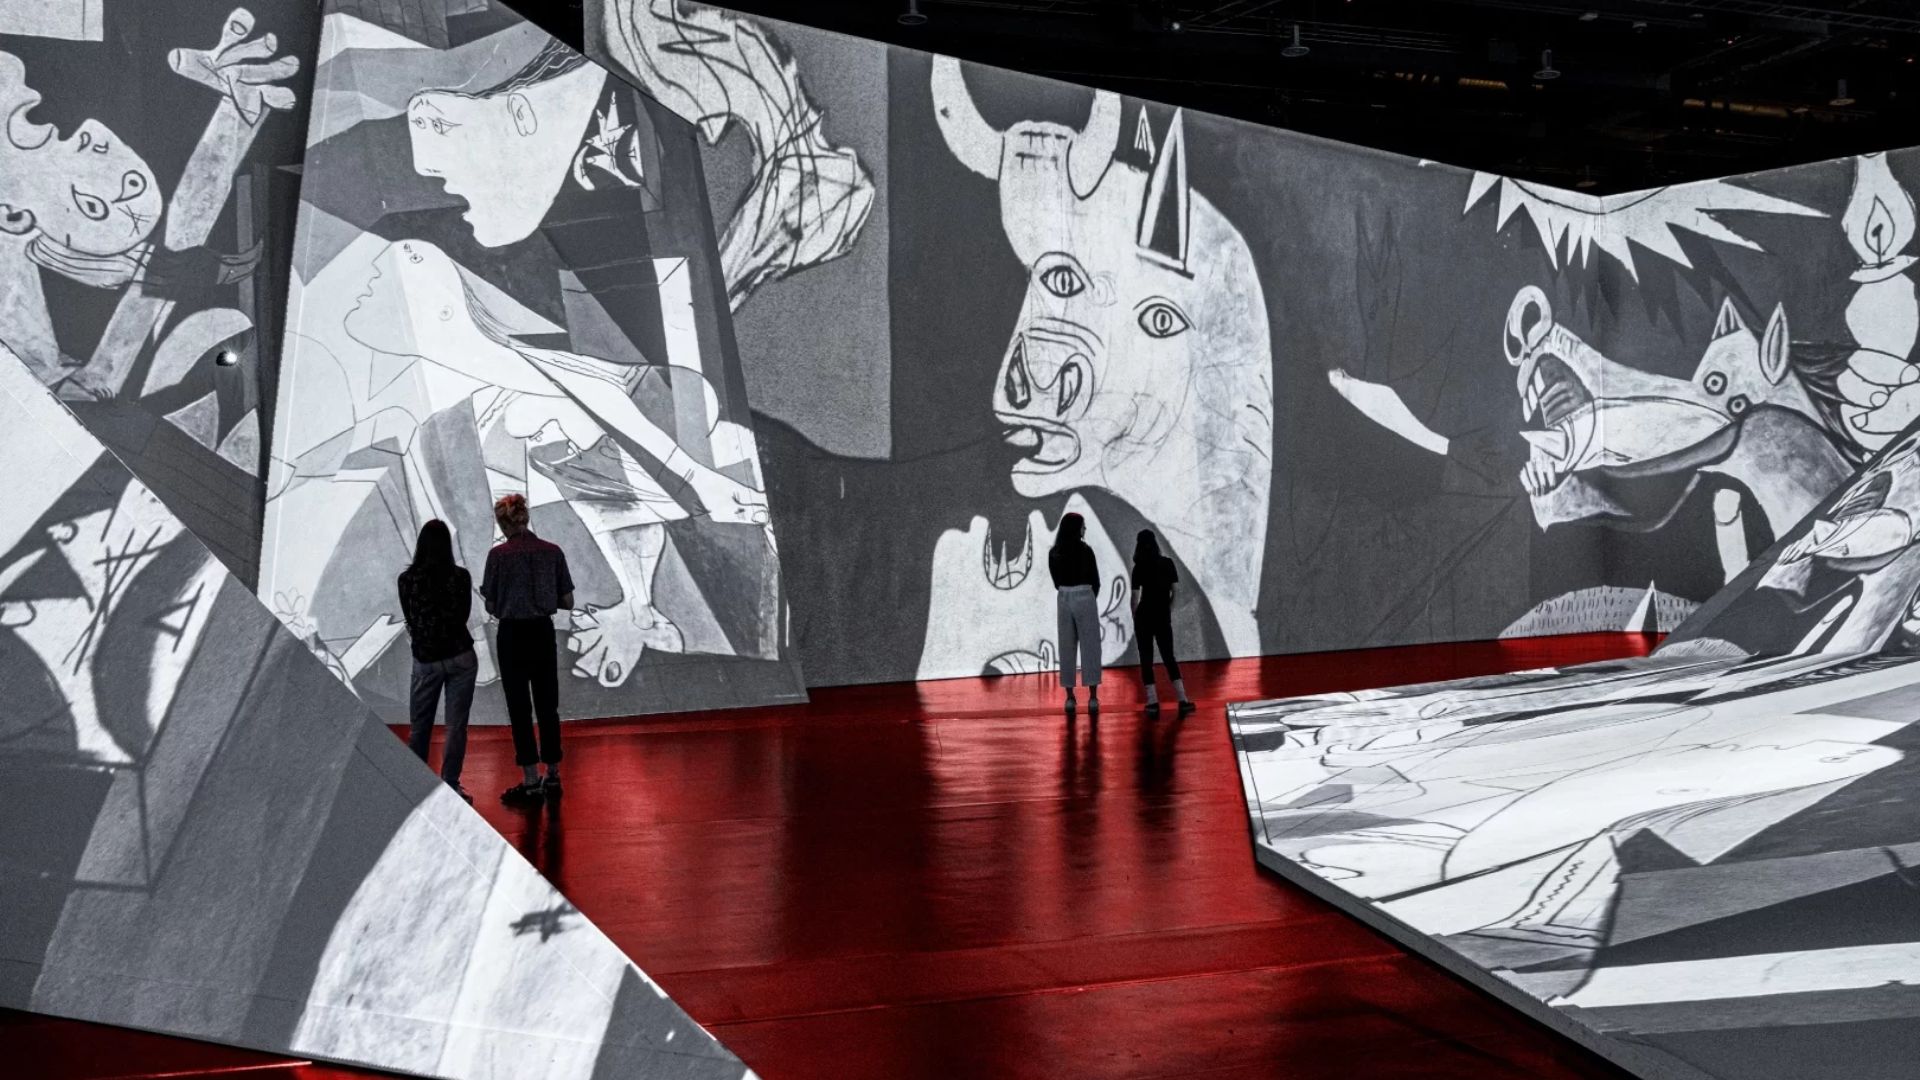 Exposição Imersiva de Picasso estreia em março em São Paulo | Curitiba Cult  - Agenda cultural de Curitiba